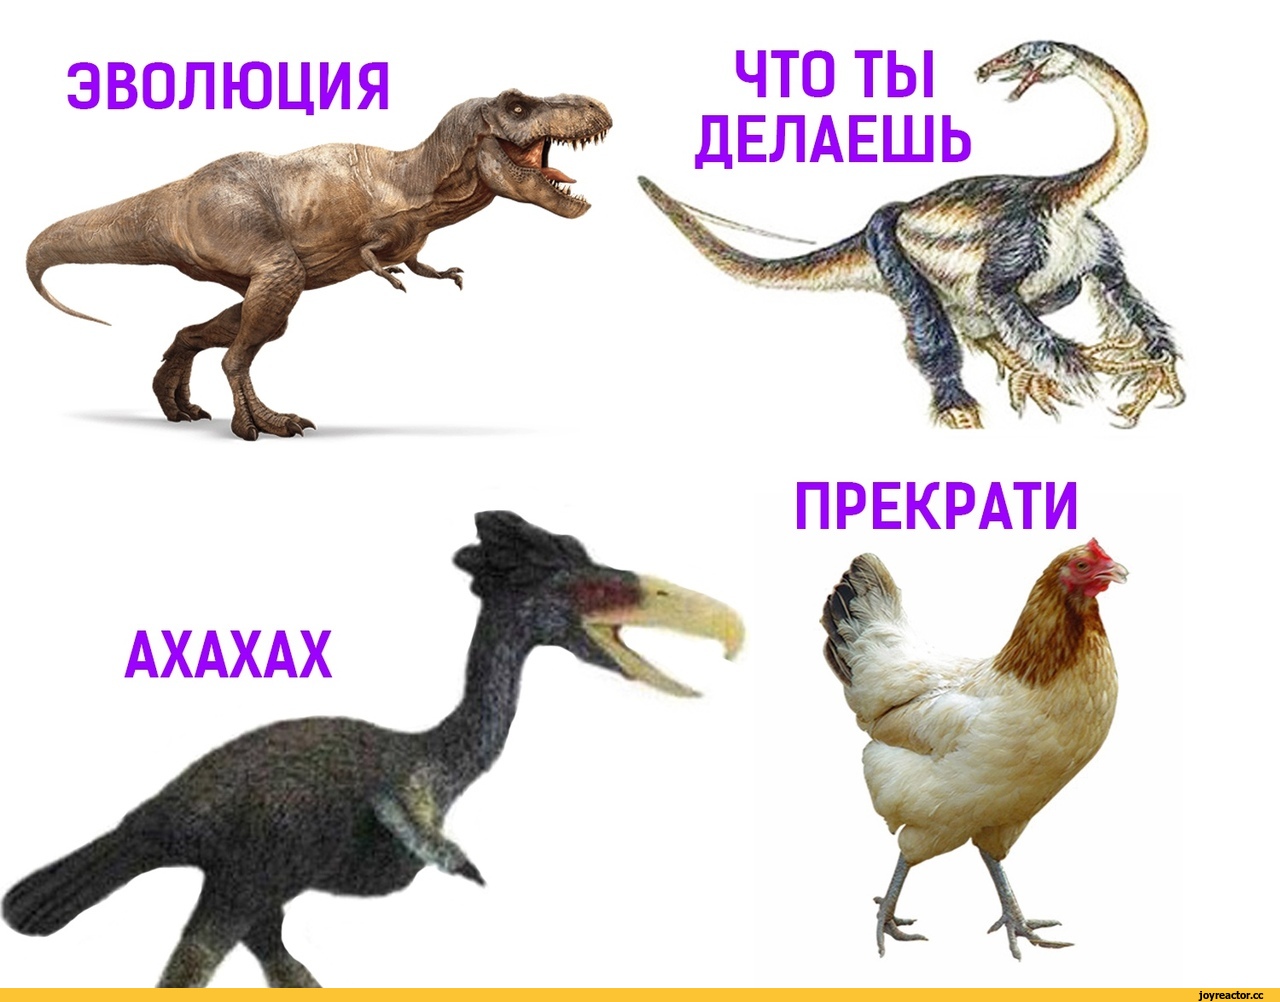 Ближайший родственник динозавра. Эволюция динозавров. Курица родственник динозавра. Курица потомок динозавров. Динозавр прародитель курицы.